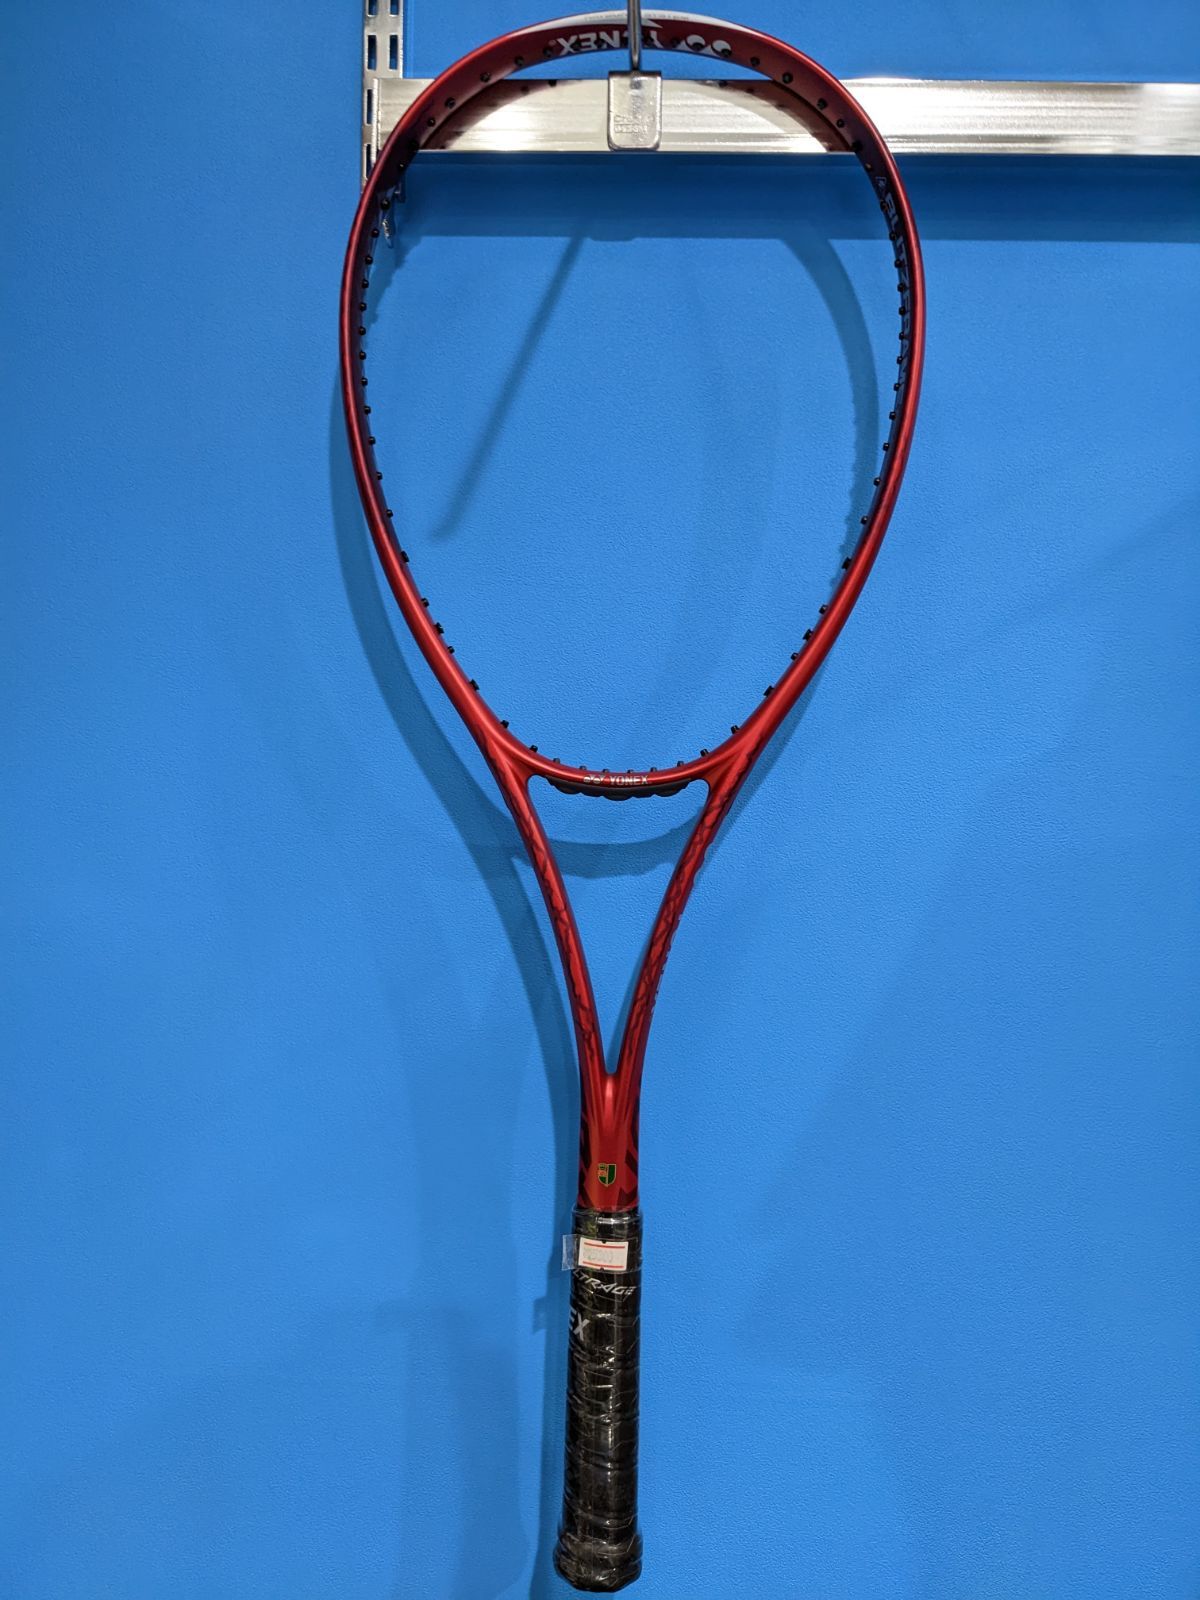 ヨネックス ソフトテニス ラケット ボルトレイジ7V - メルカリShops